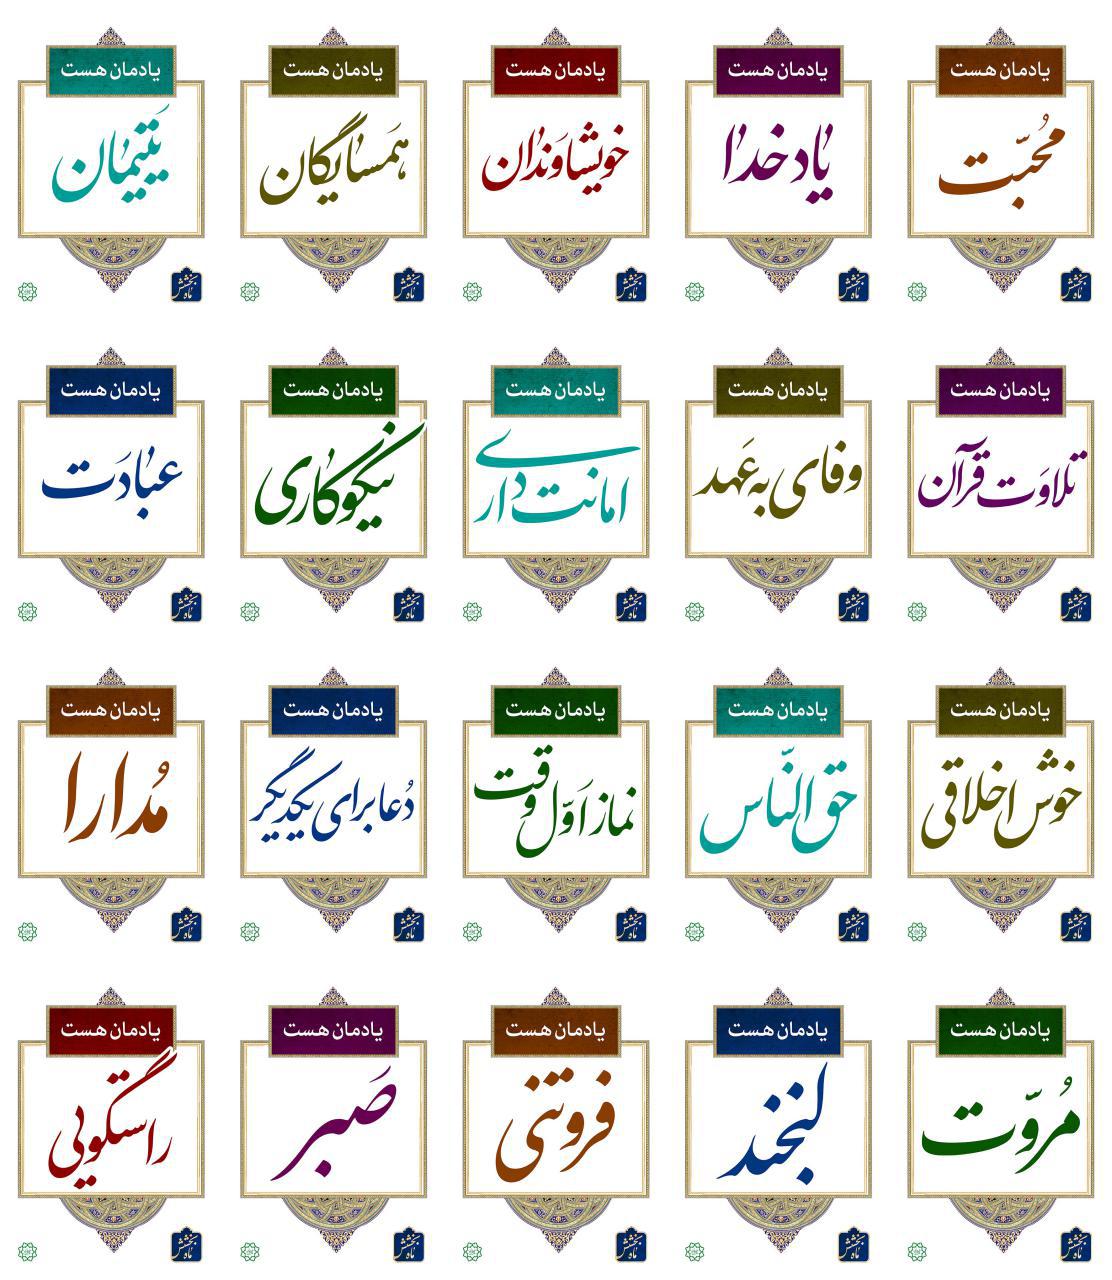 تبلیغات فرهنگی شهرداری تهران به مناسبت رمضان